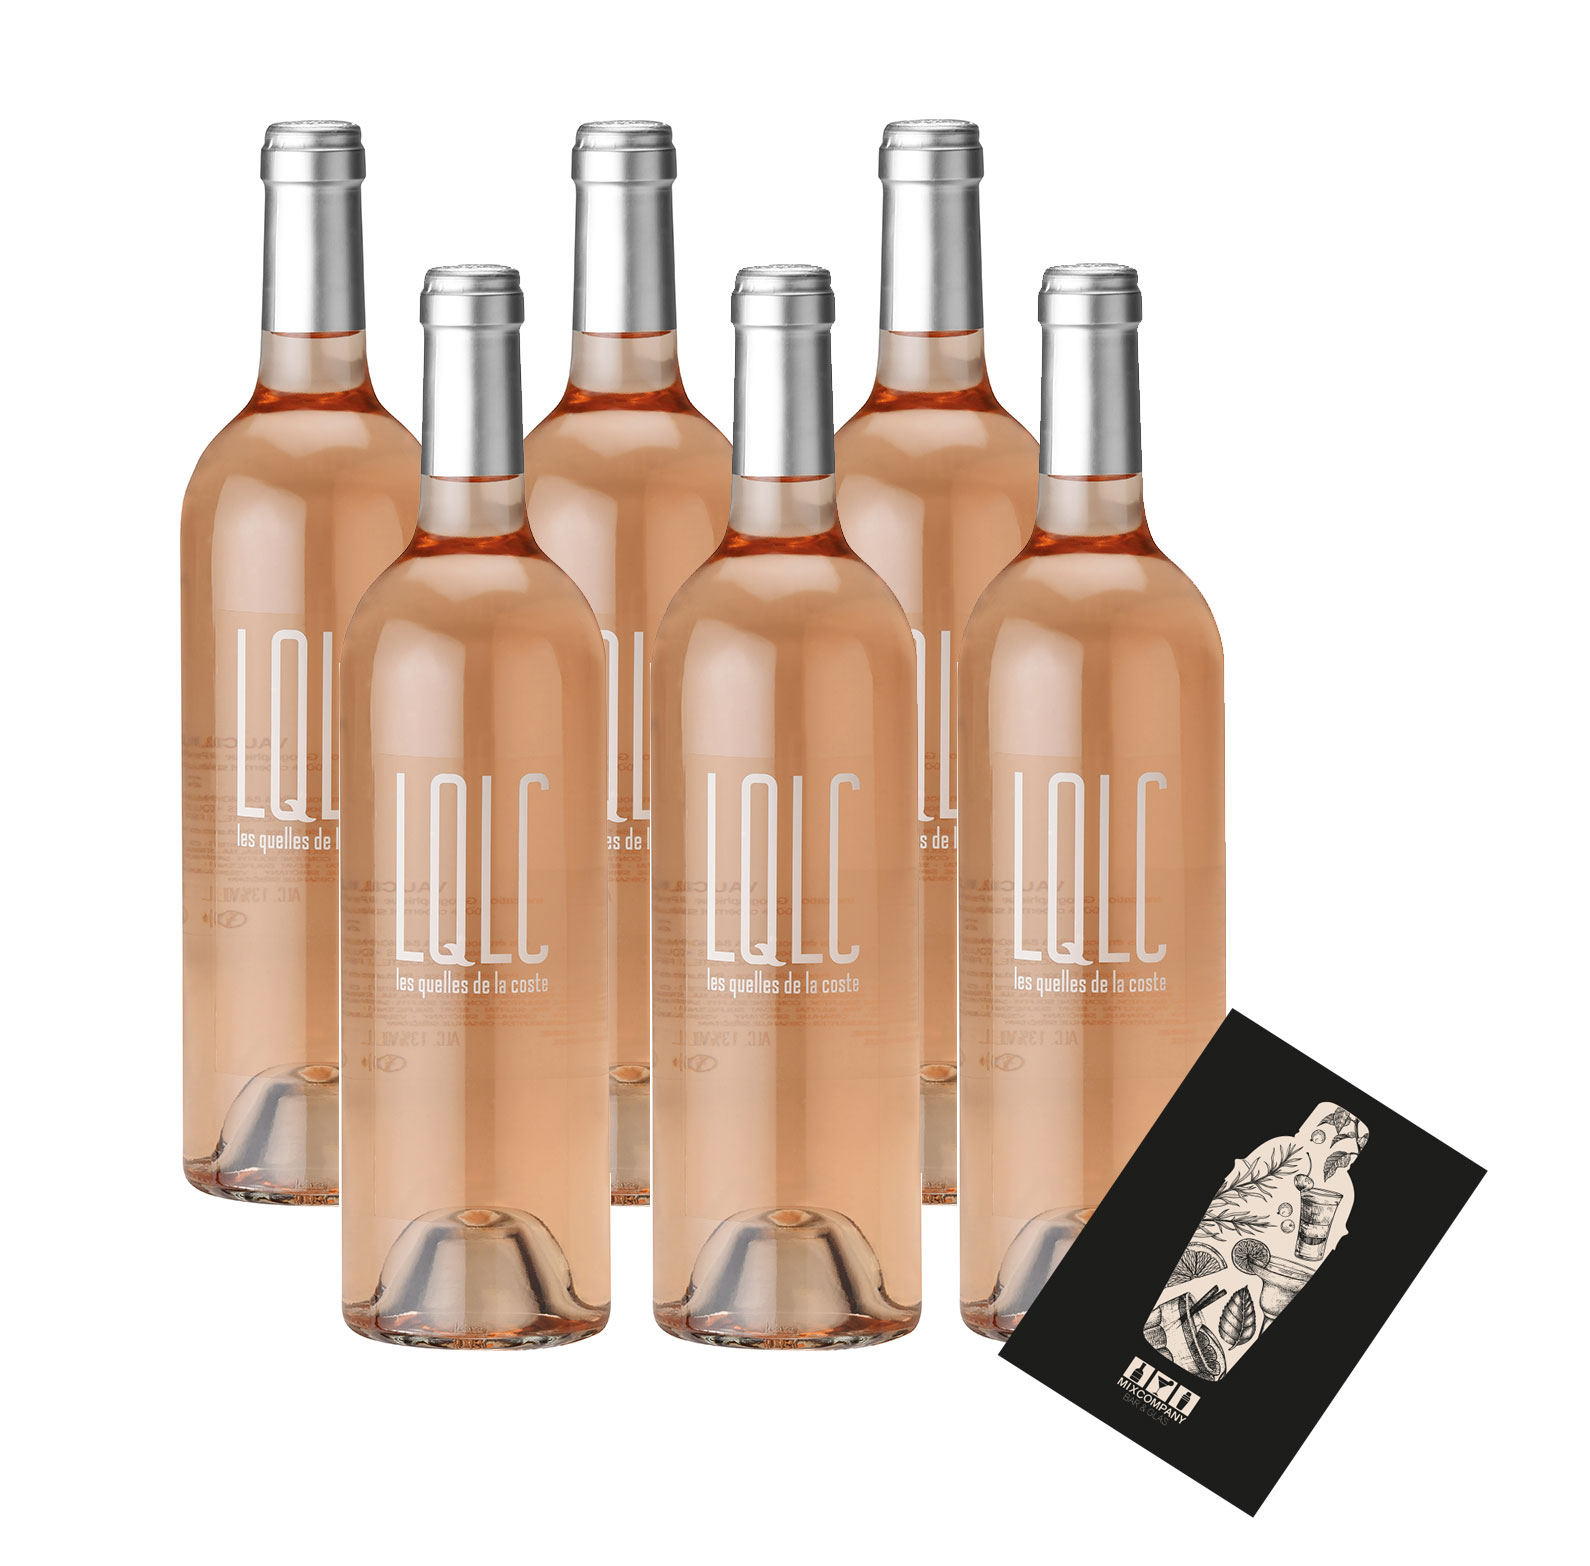 LQLC Rose 6er Set Wein 6x 0,75L (13% Vol) Les quelles de la coste rose von John Malkovich Frankreich Vaucluse trocken- [Enthält Sulfite]